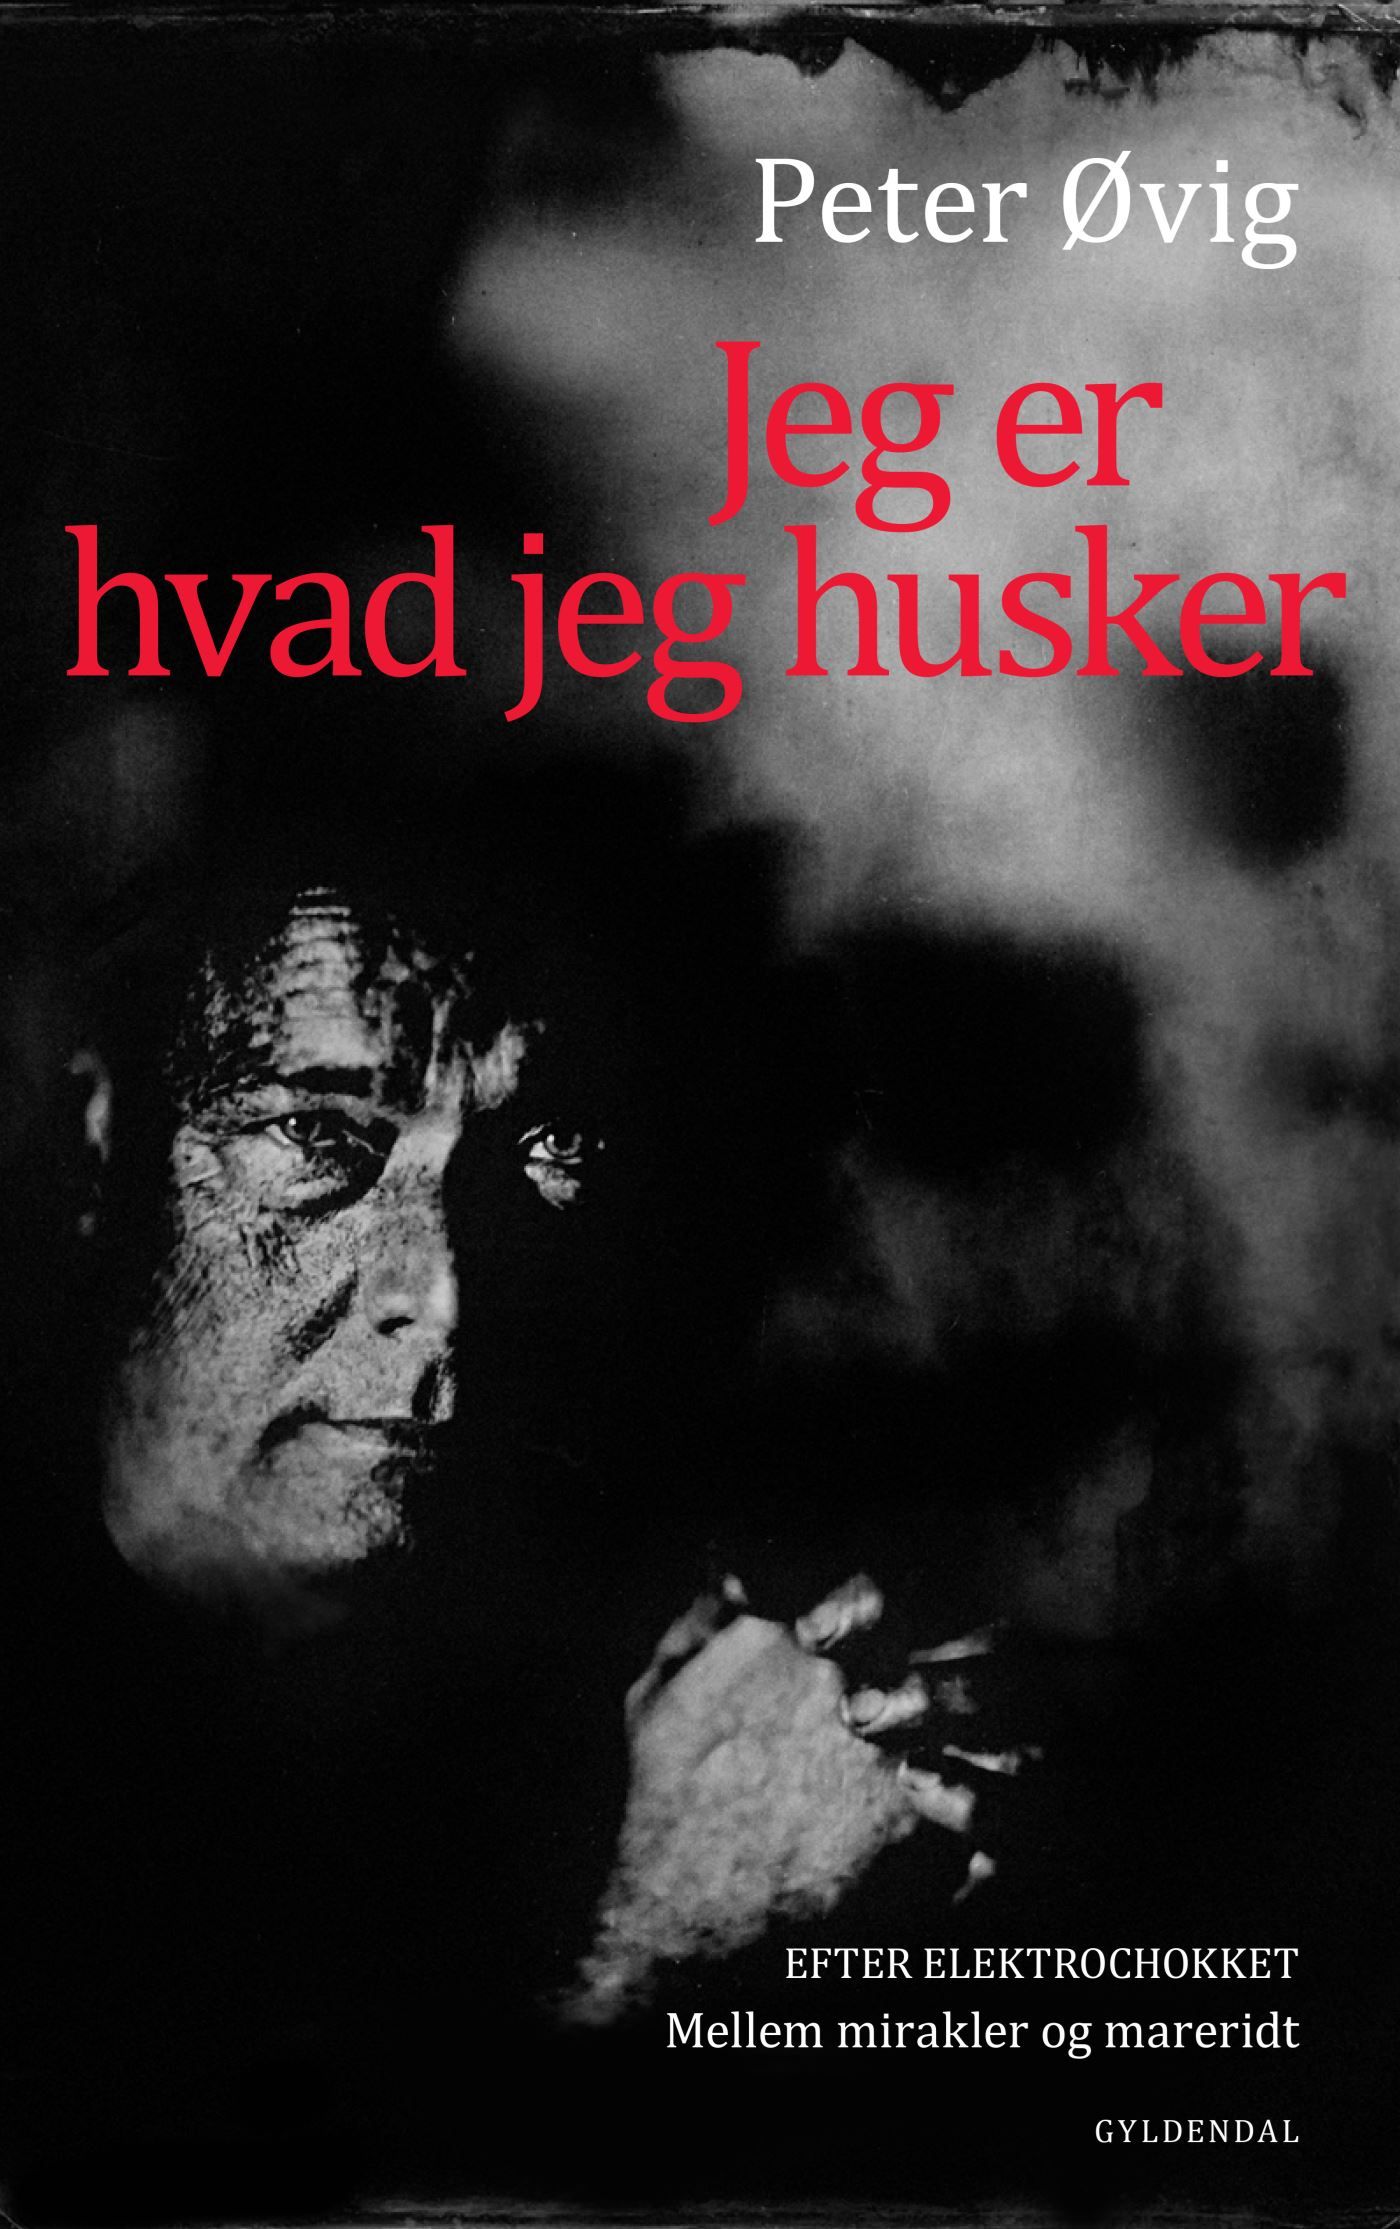 Jeg er hvad jeg husker, e-bok av Peter Øvig Knudsen